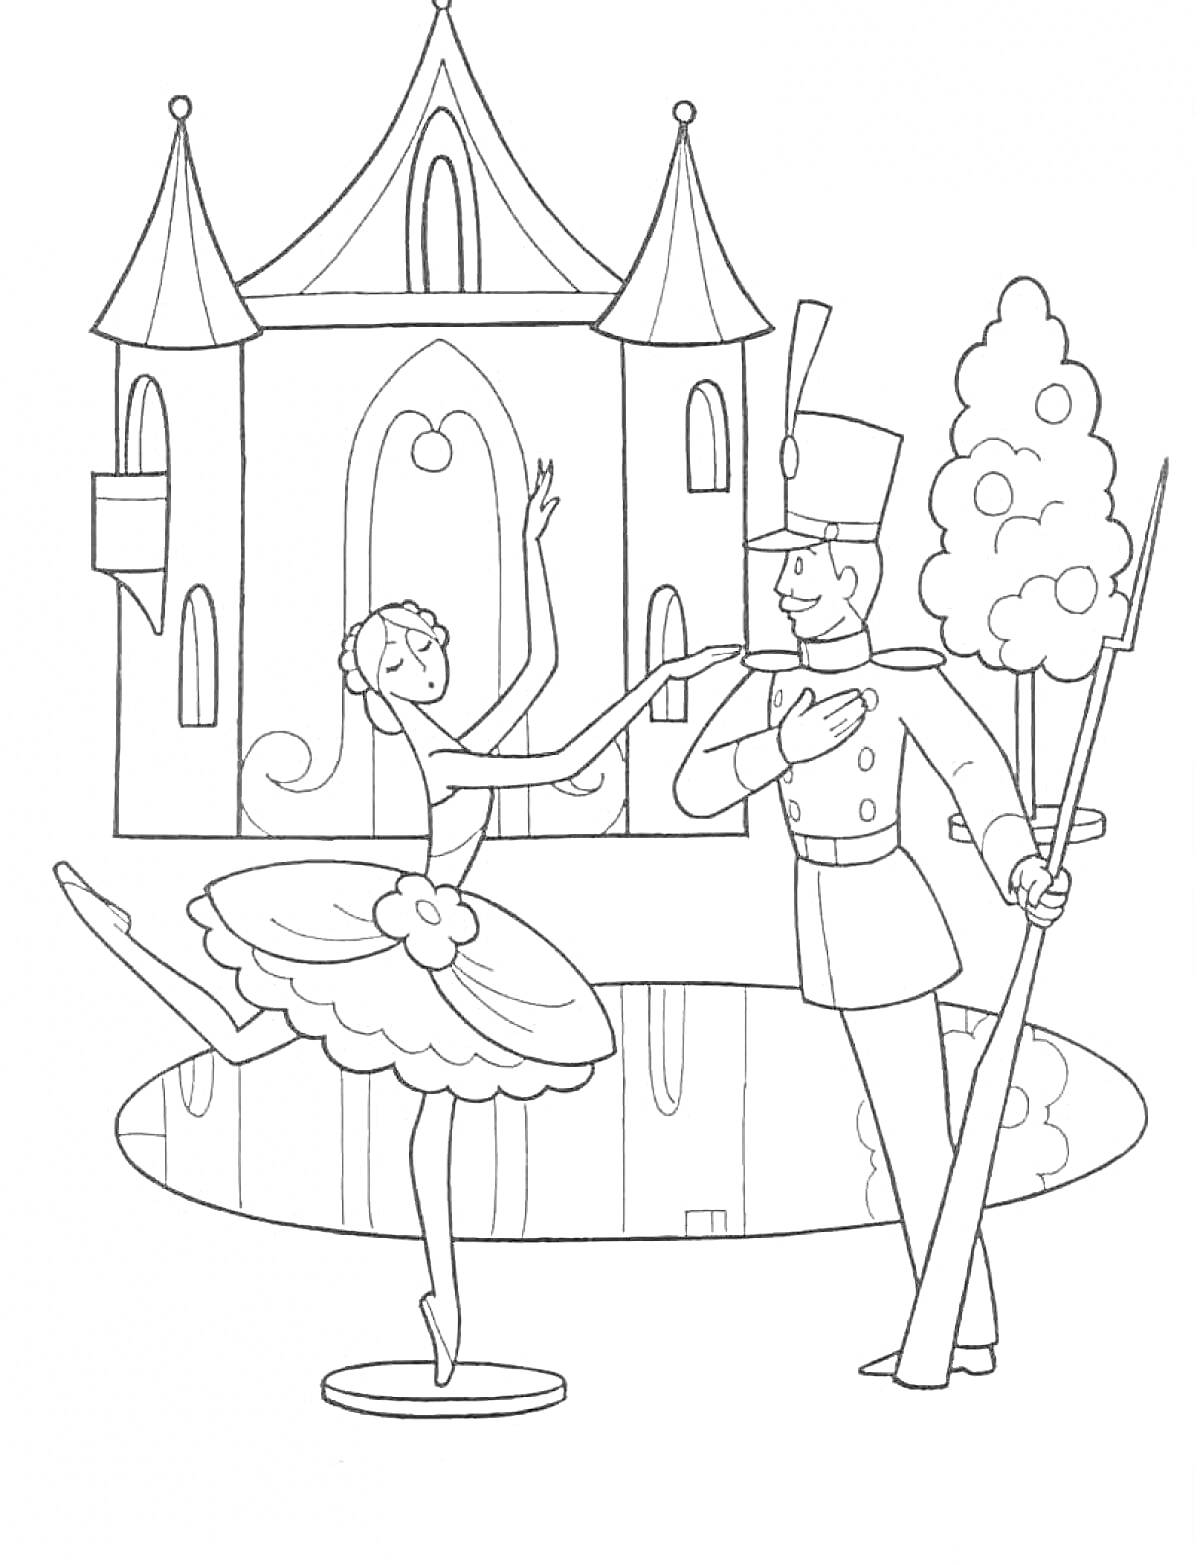 Раскраска Оловянный солдатик и балерина перед замком